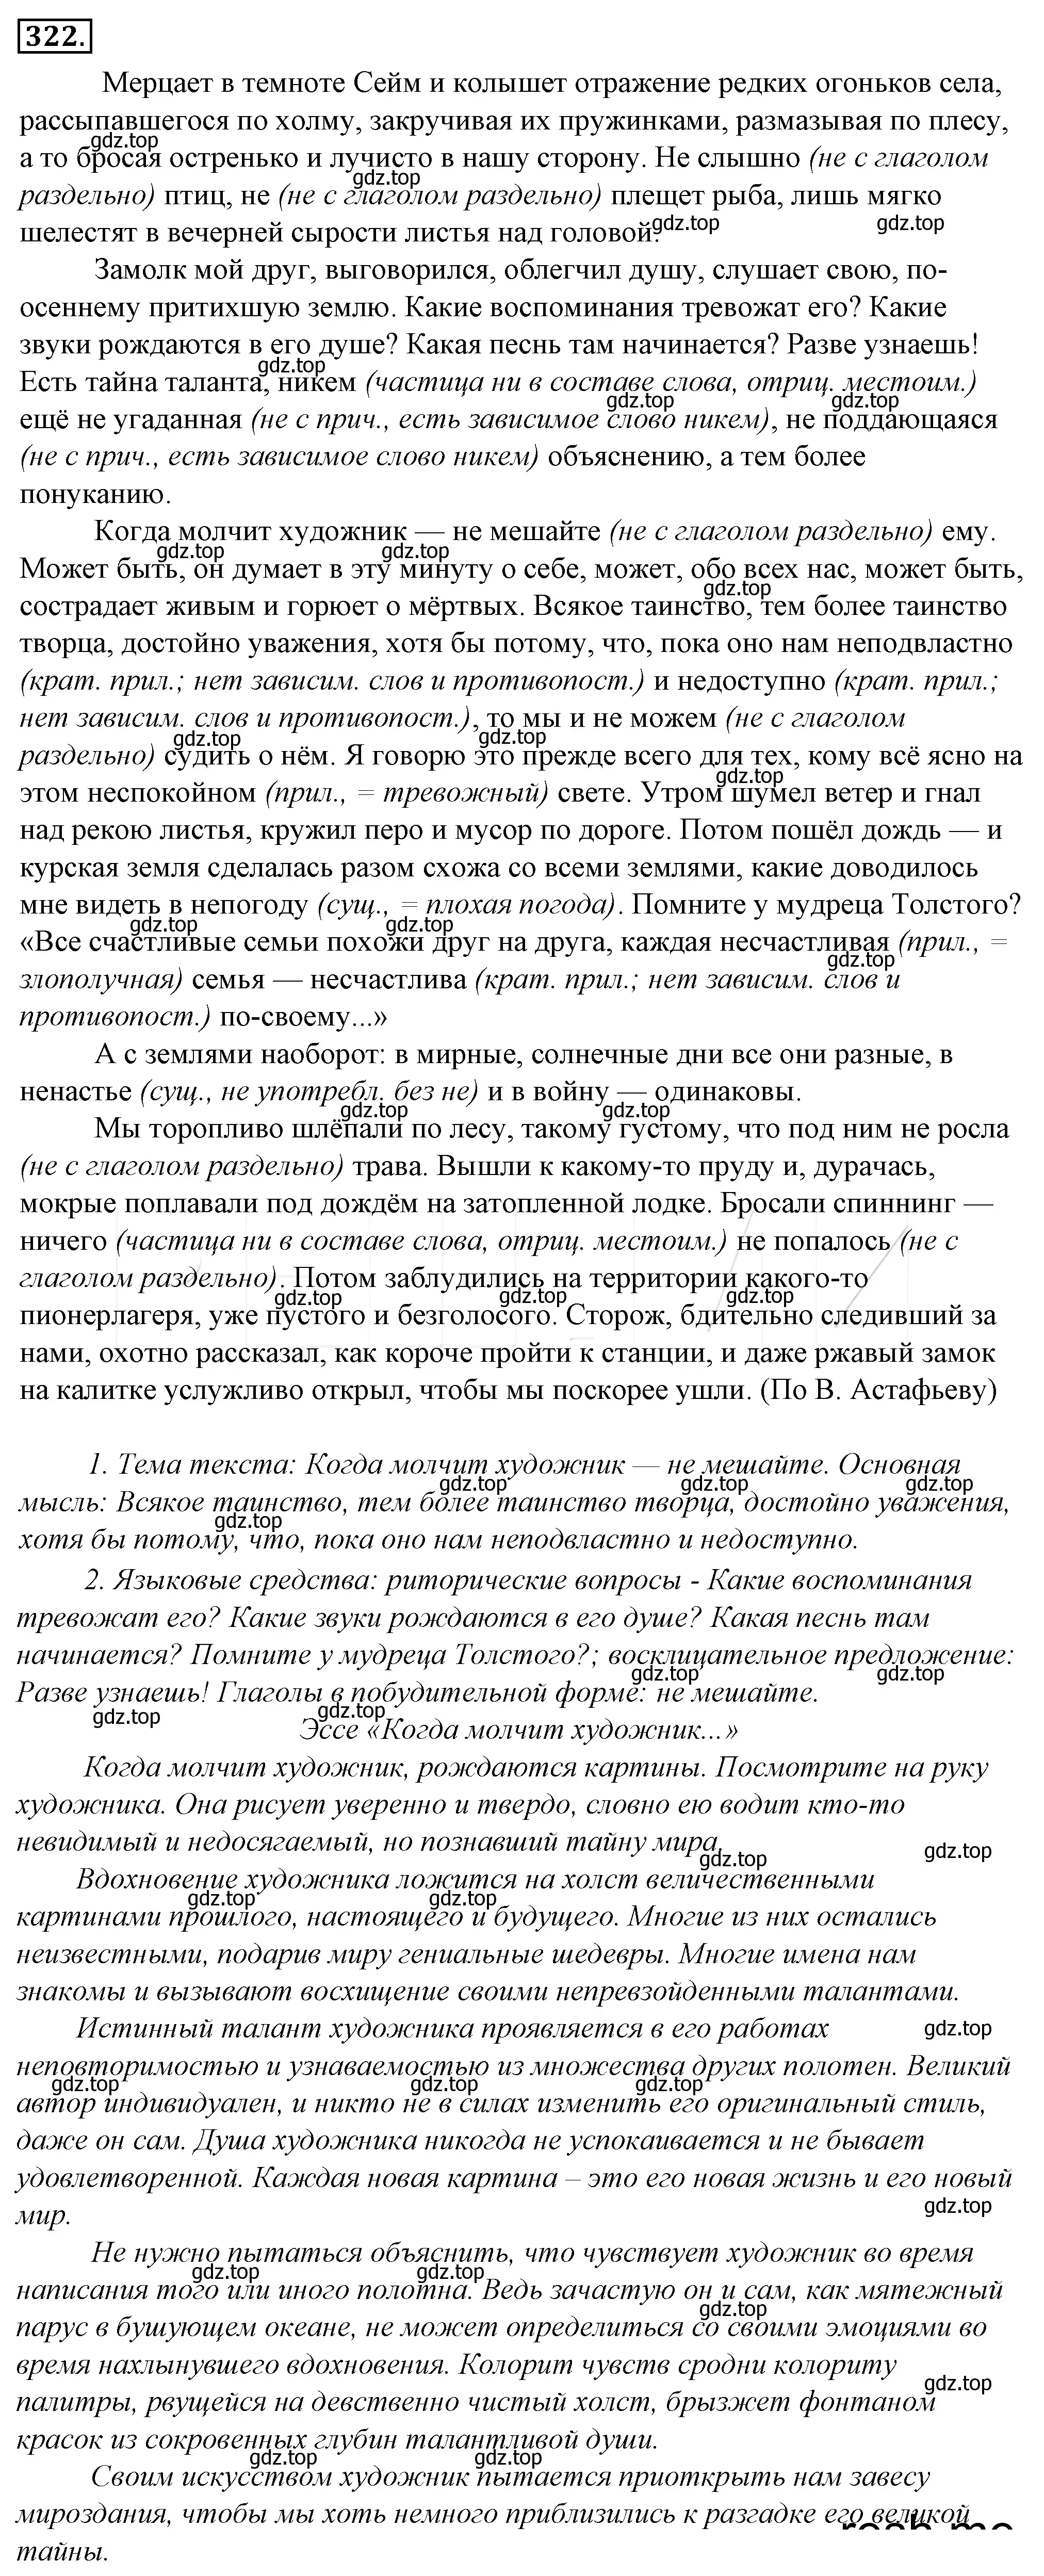 Решение 4. номер 346 (страница 326) гдз по русскому языку 10-11 класс Гольцова, Шамшин, учебник 1 часть